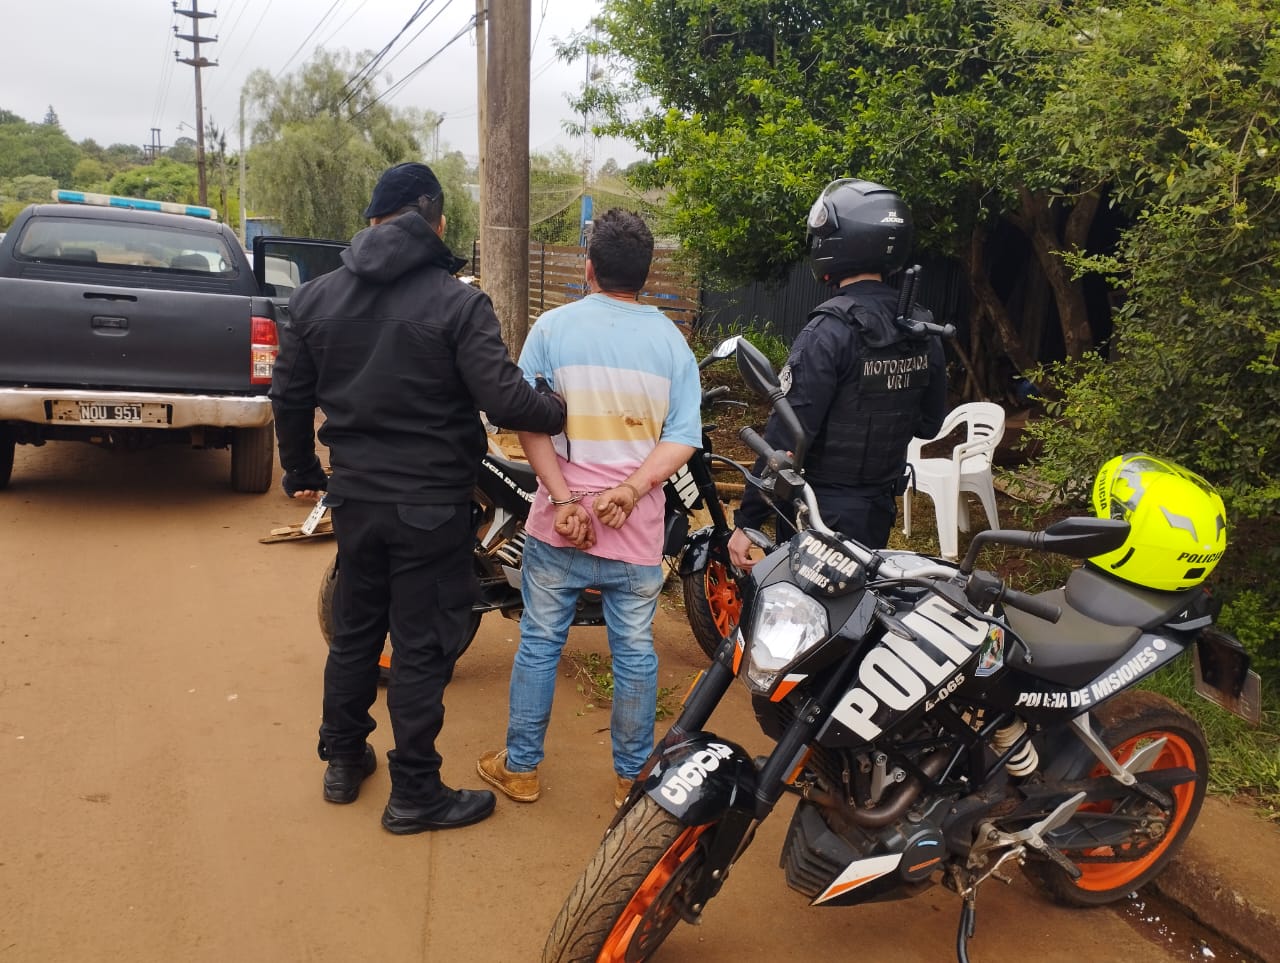 Brasileño fue detenido tras amenazar e intentar agredir a la propietaria de un inquilinato imagen-1